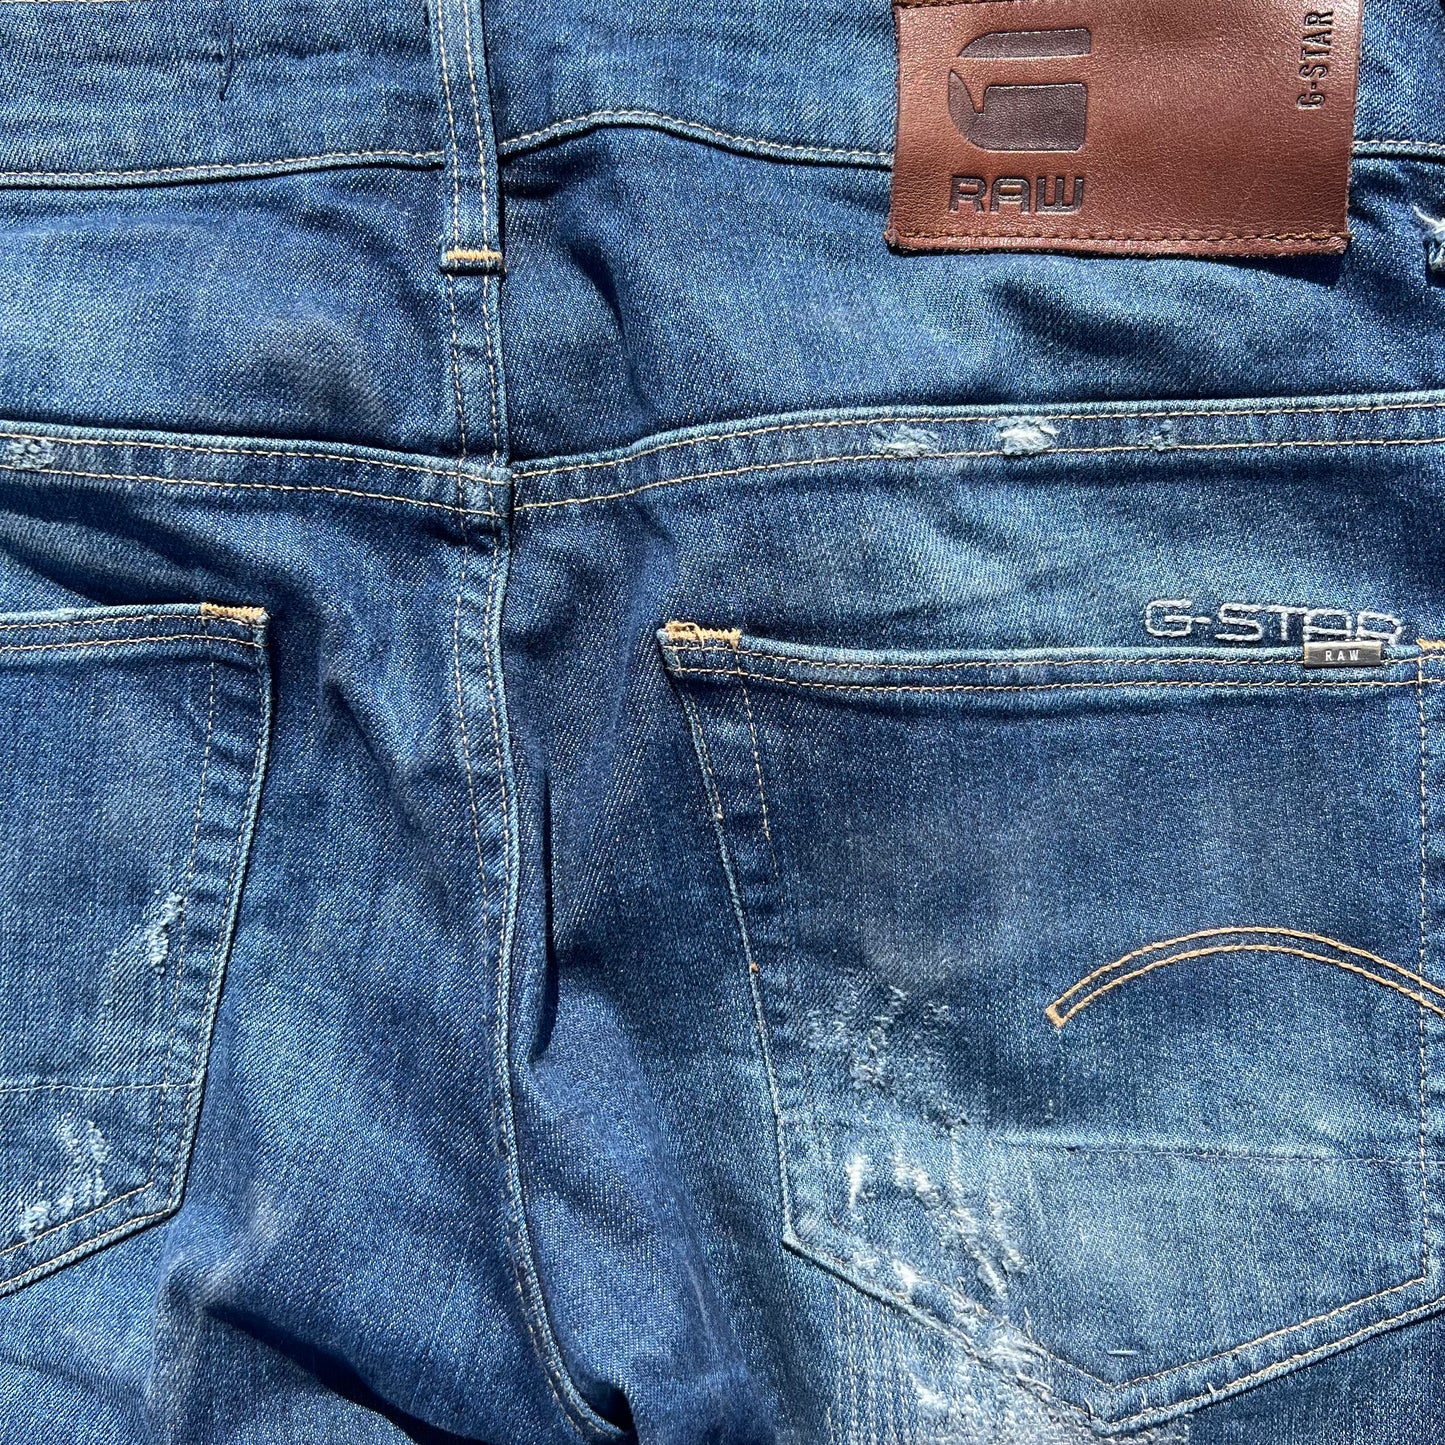 GStar Restored Denim Jeans